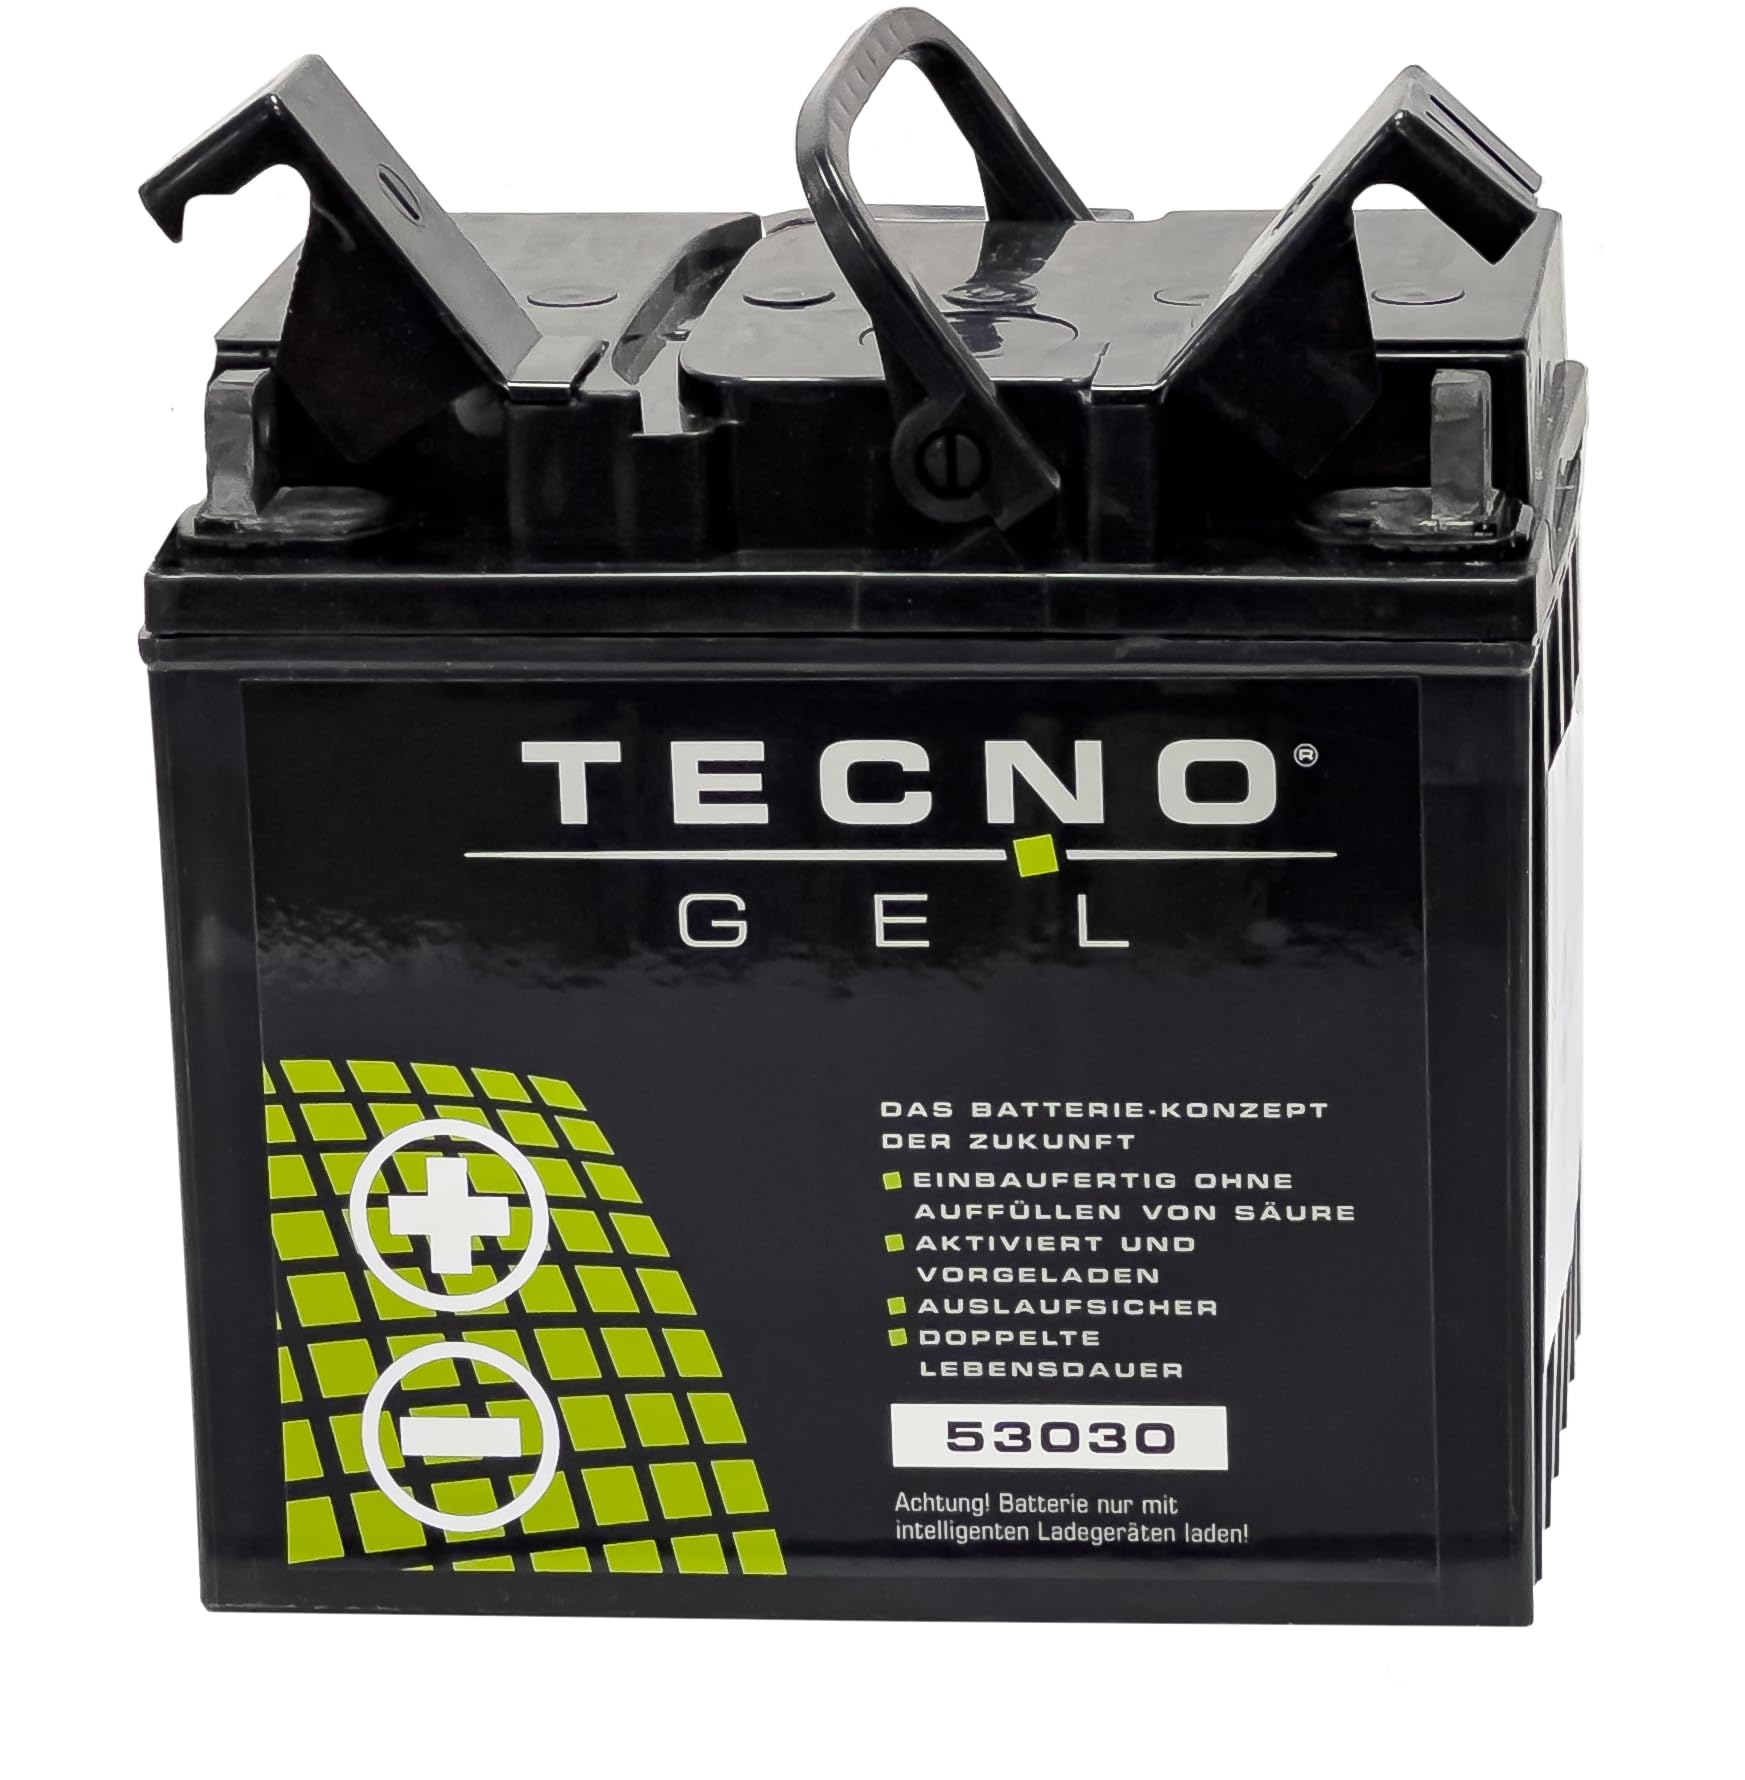 TECNO-GEL Motorrad Qualitäts Batterie 53030 für MOTO GUZZI Mille 1000 GT 1987-1994, 12V Gel-Batterie 30Ah, 187x130x170 mm von Wirth-Federn